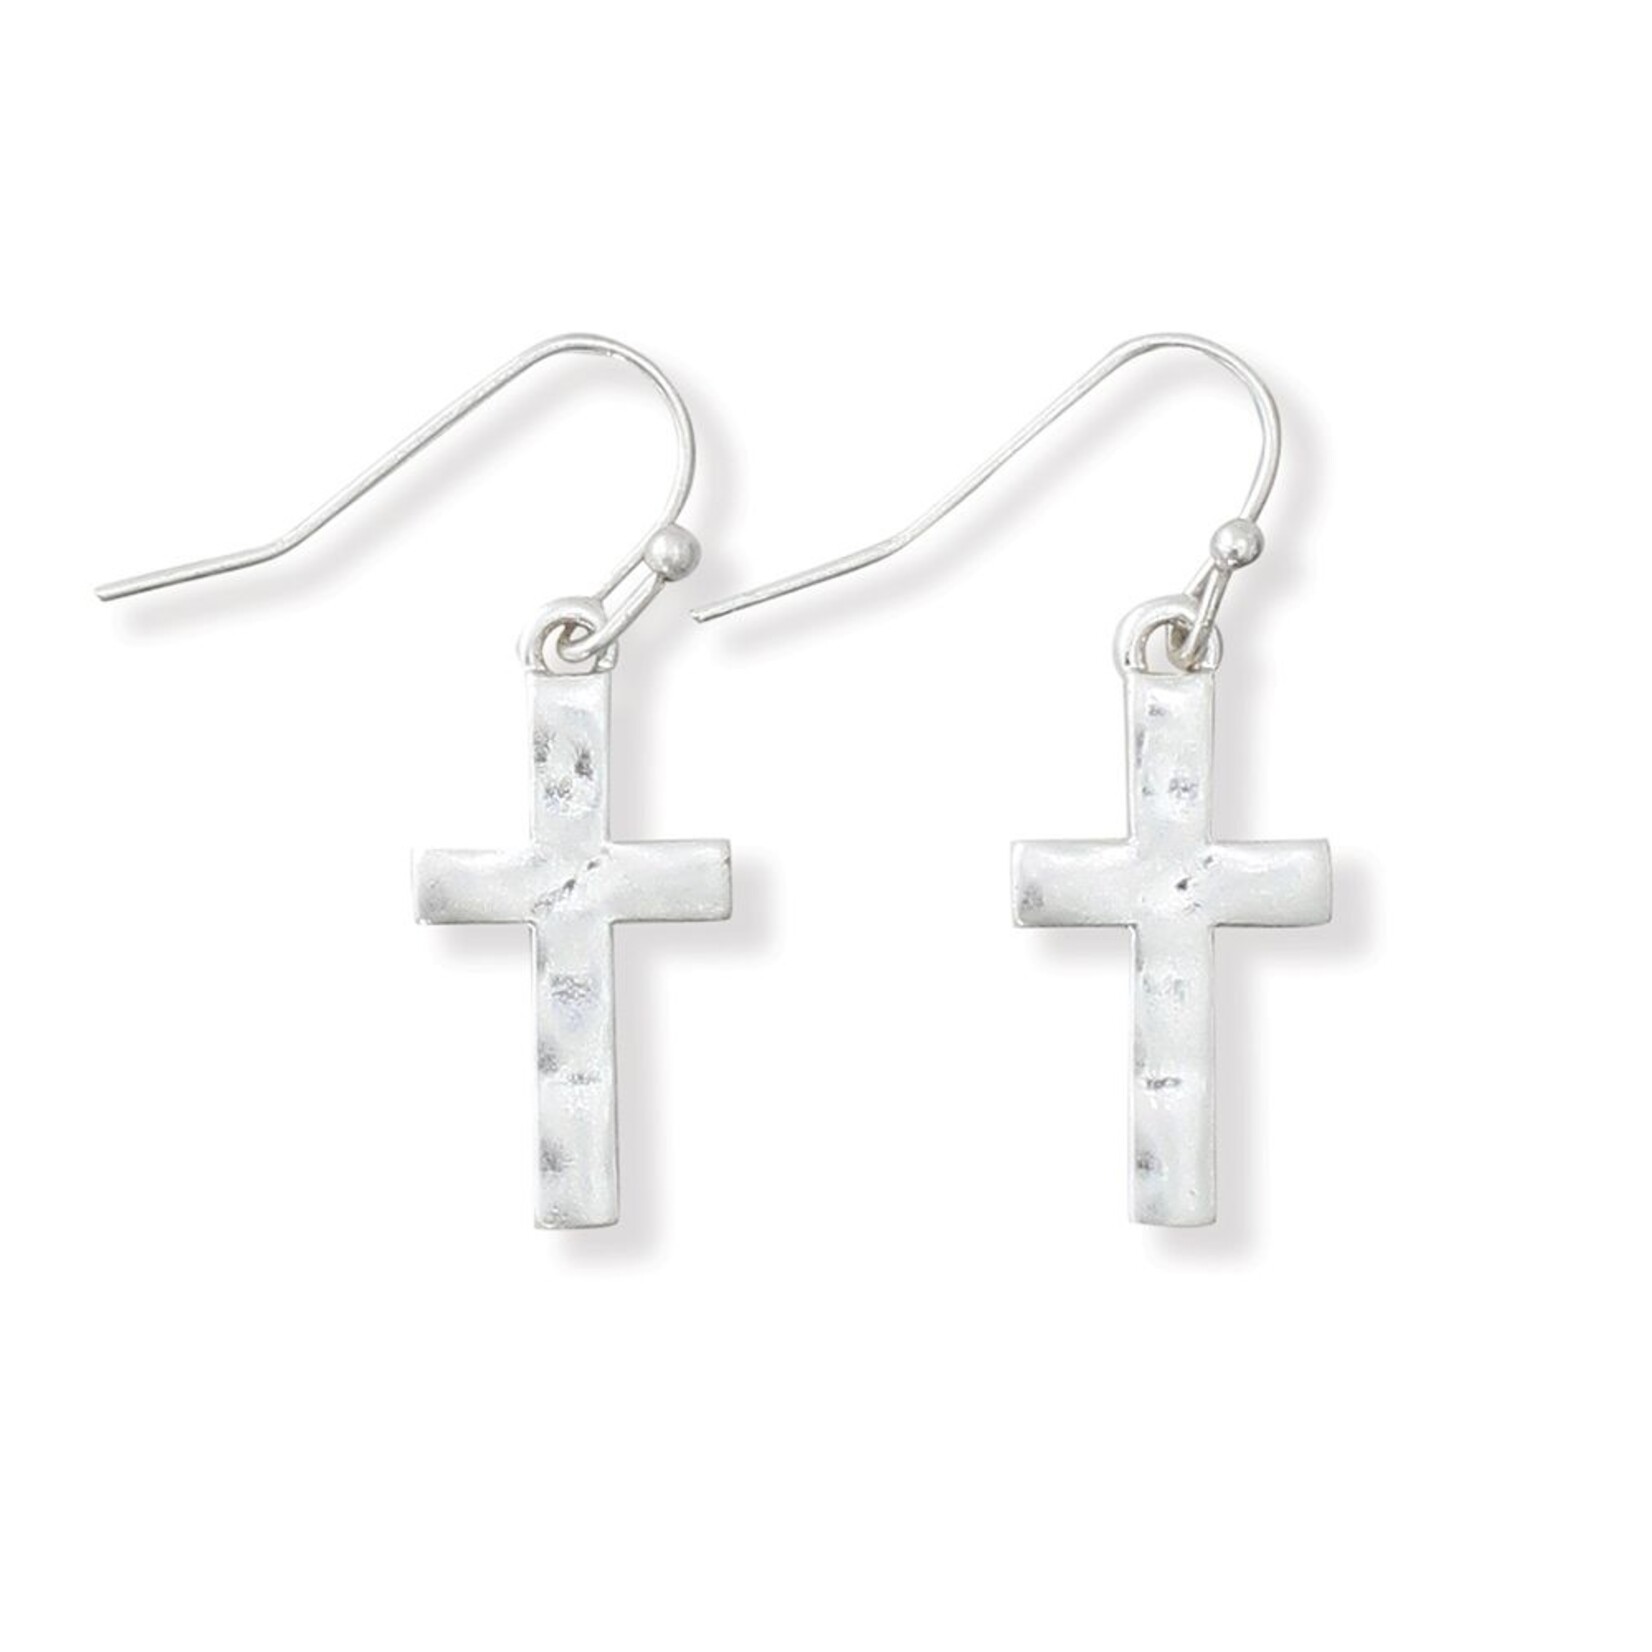 Periwinkle Periwinkle - Earrings - Hammered Cross